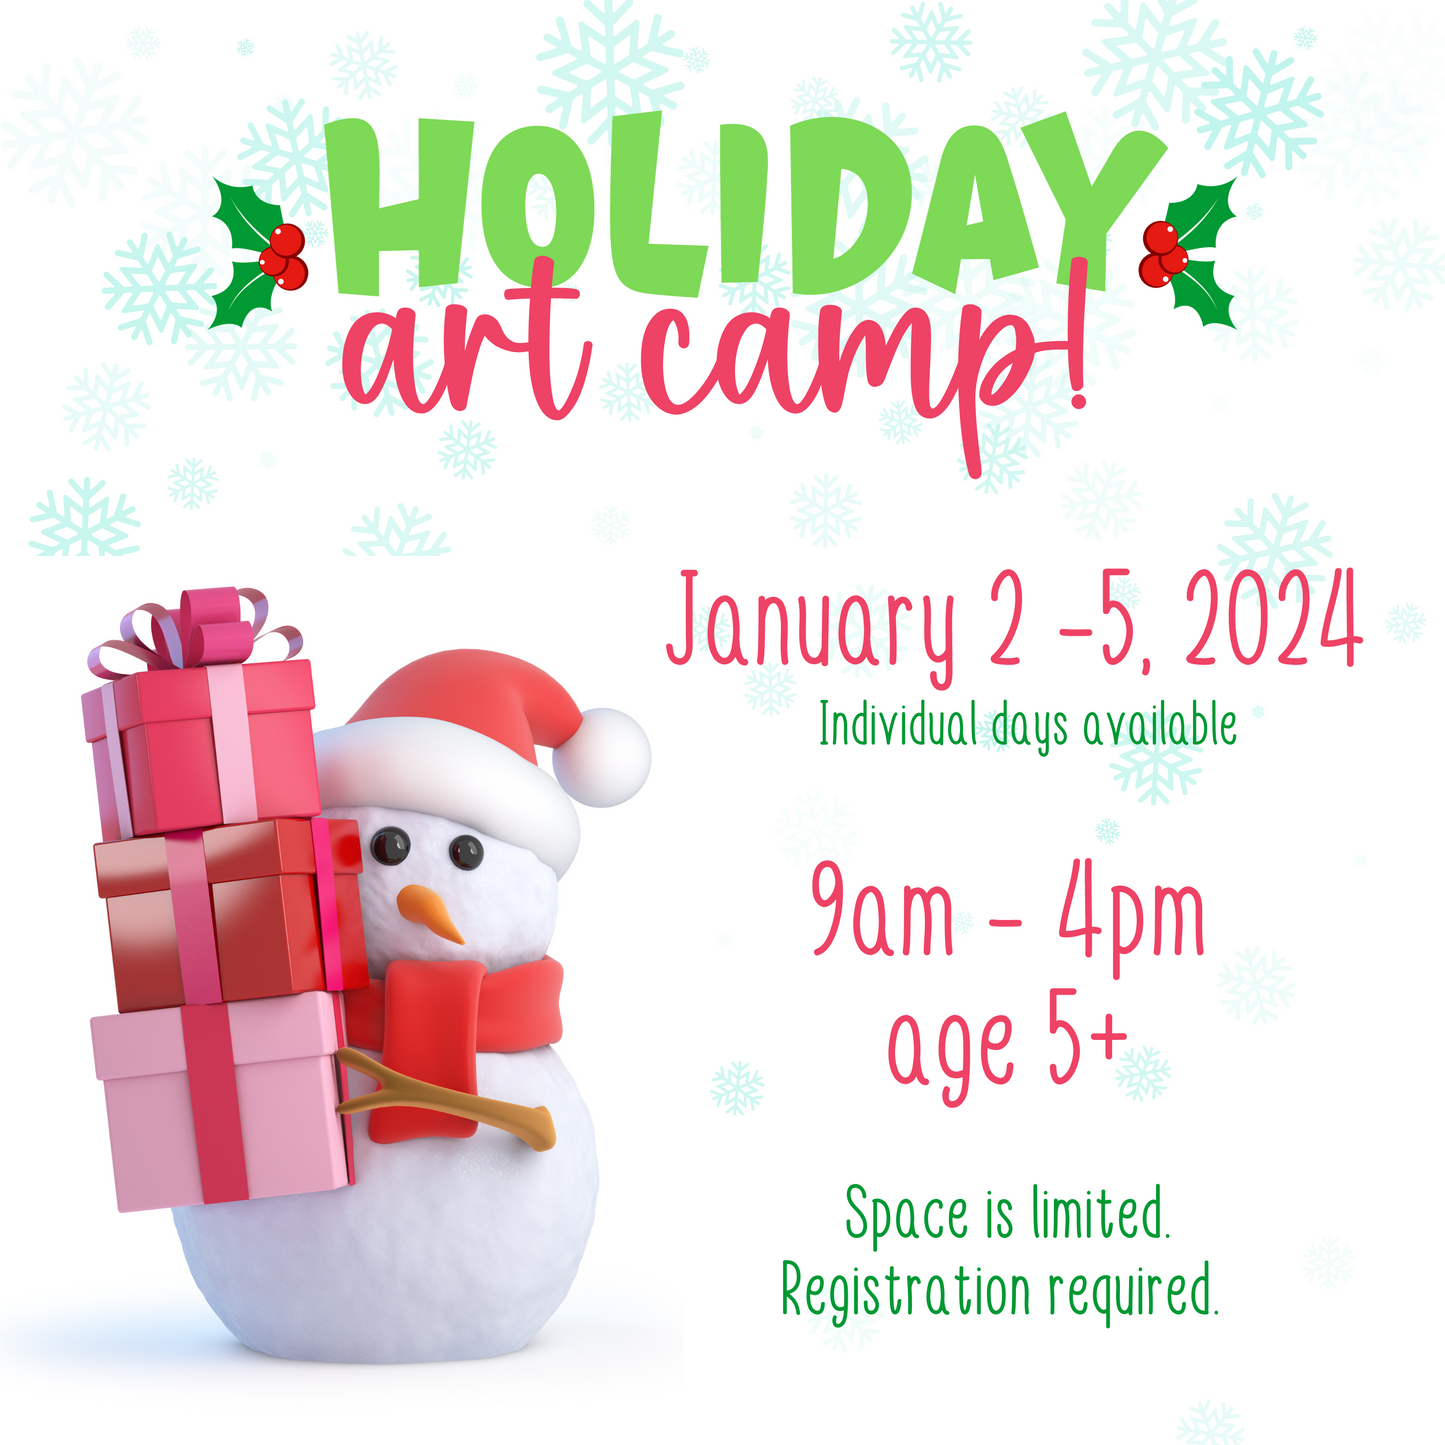 Holiday Art Camp - January 5, 2024